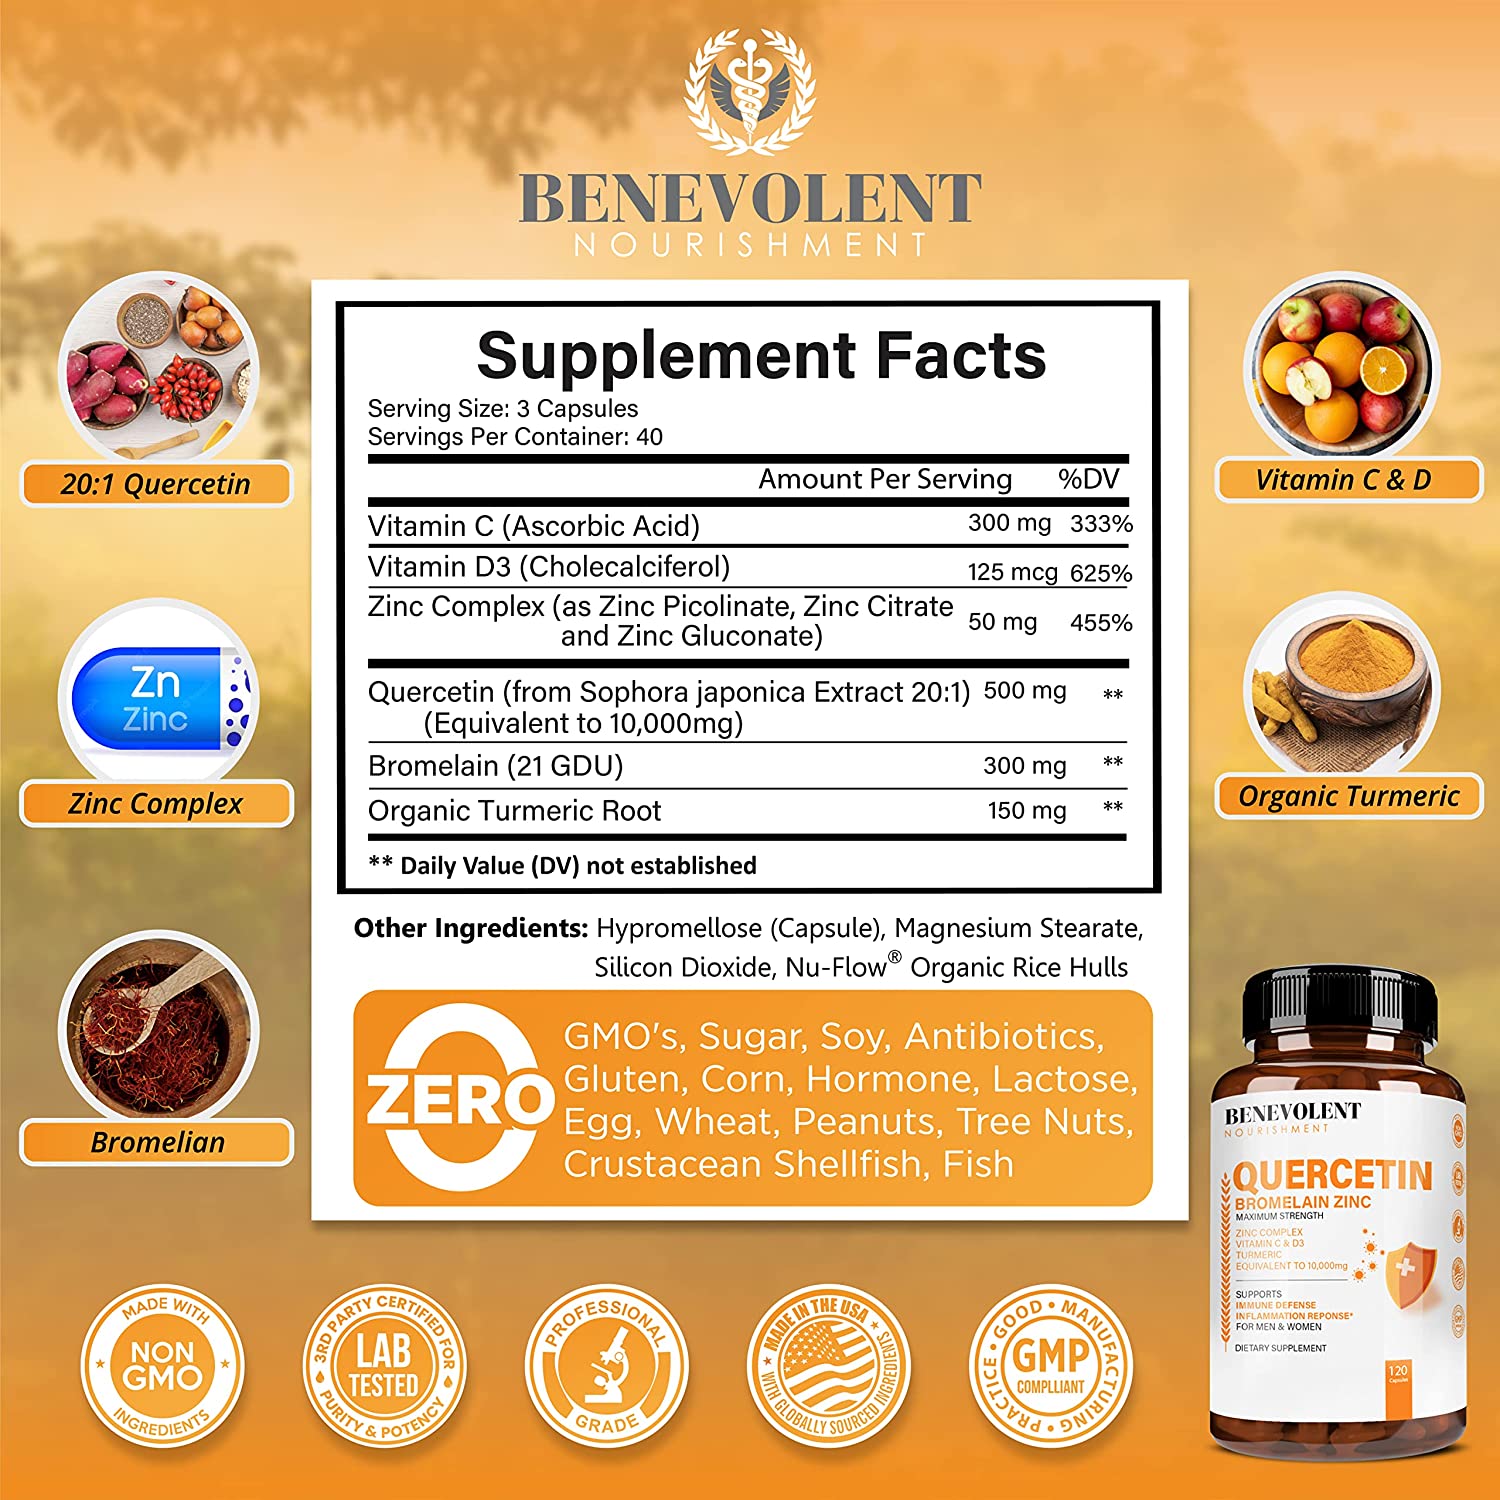 Quercetin supplement facts